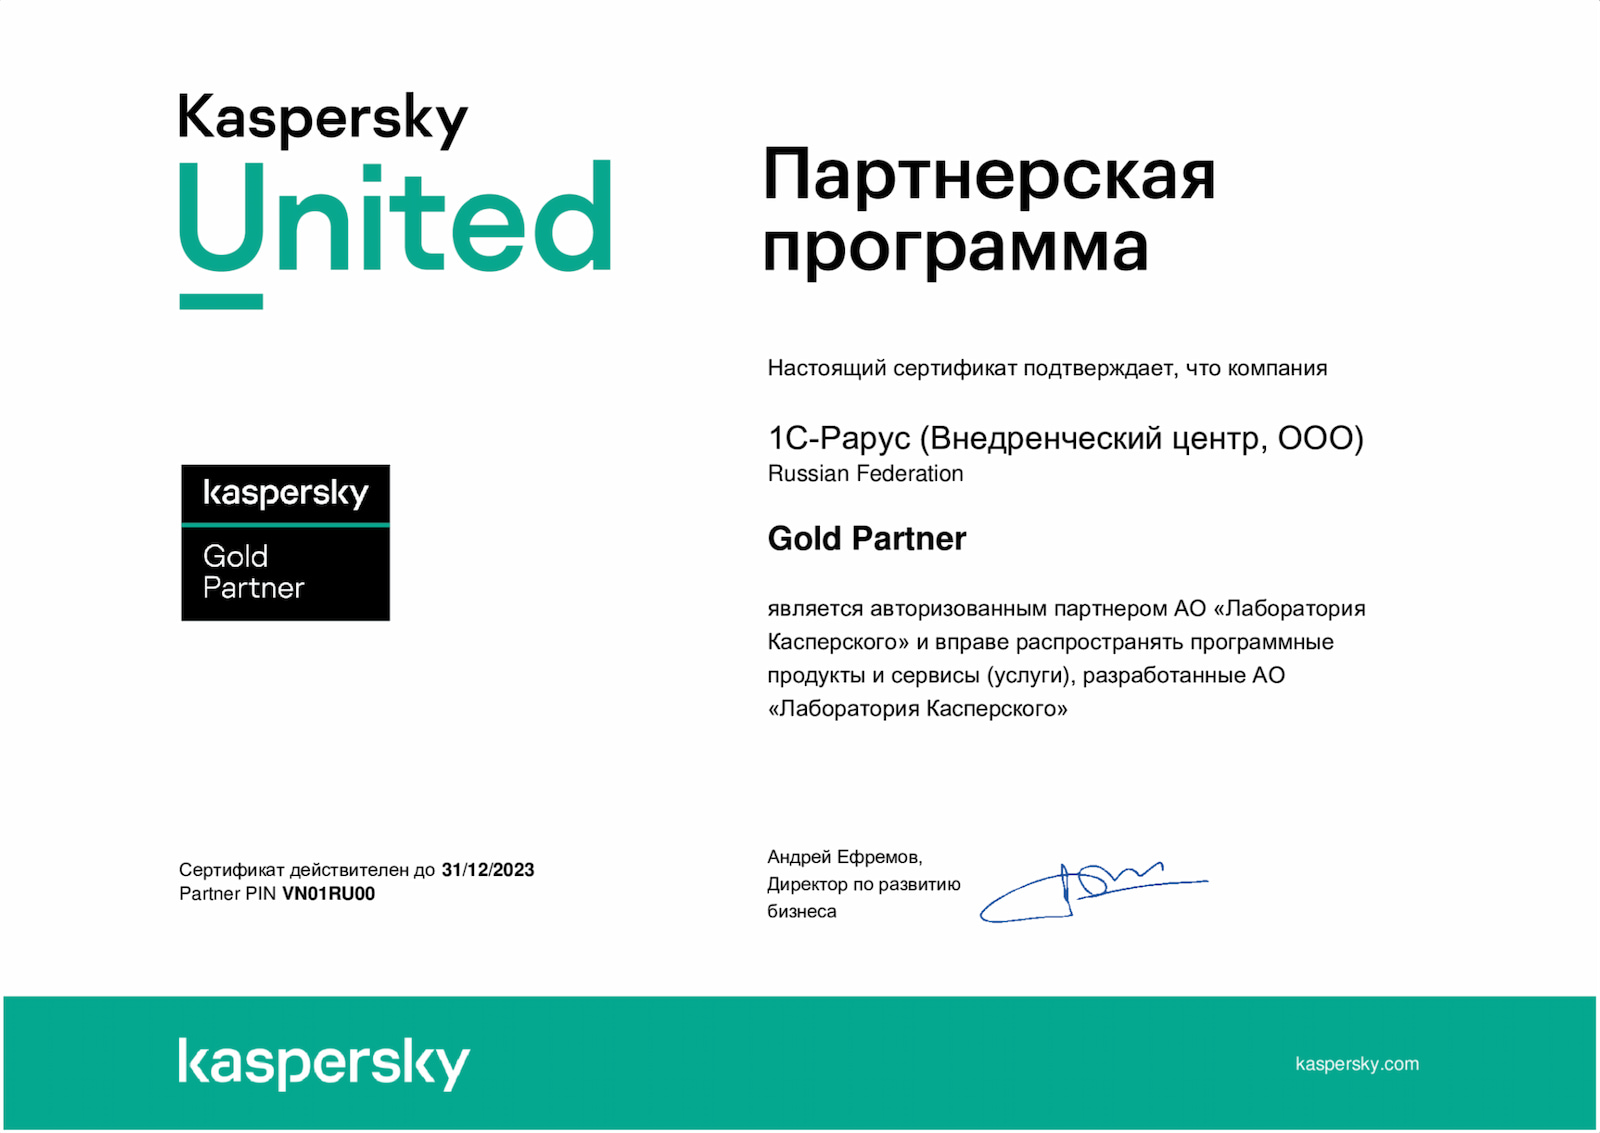 Партнер АО «Лаборатория Касперского» со статусом Gold Partner